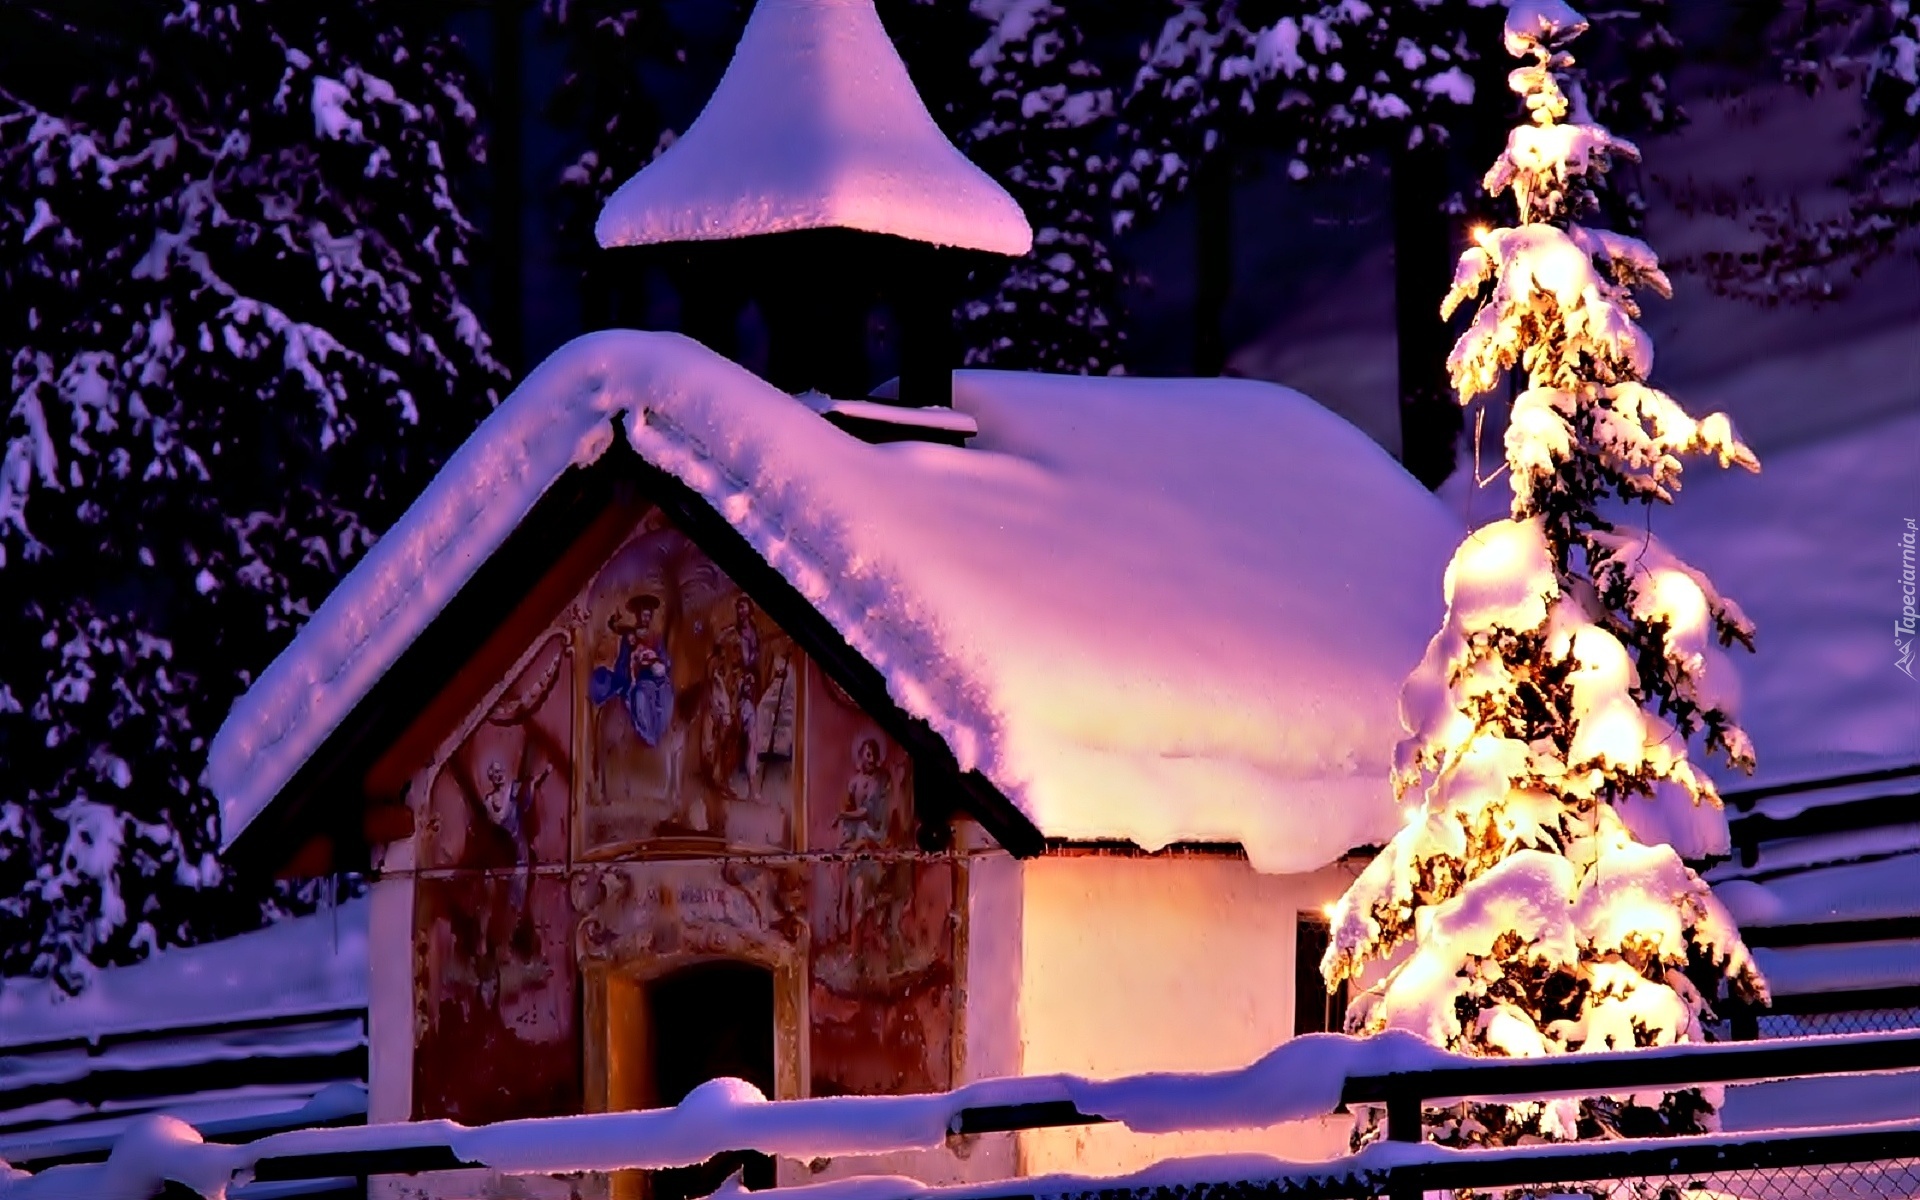 Zima, Śnieg, Cerkiew, Drzewa